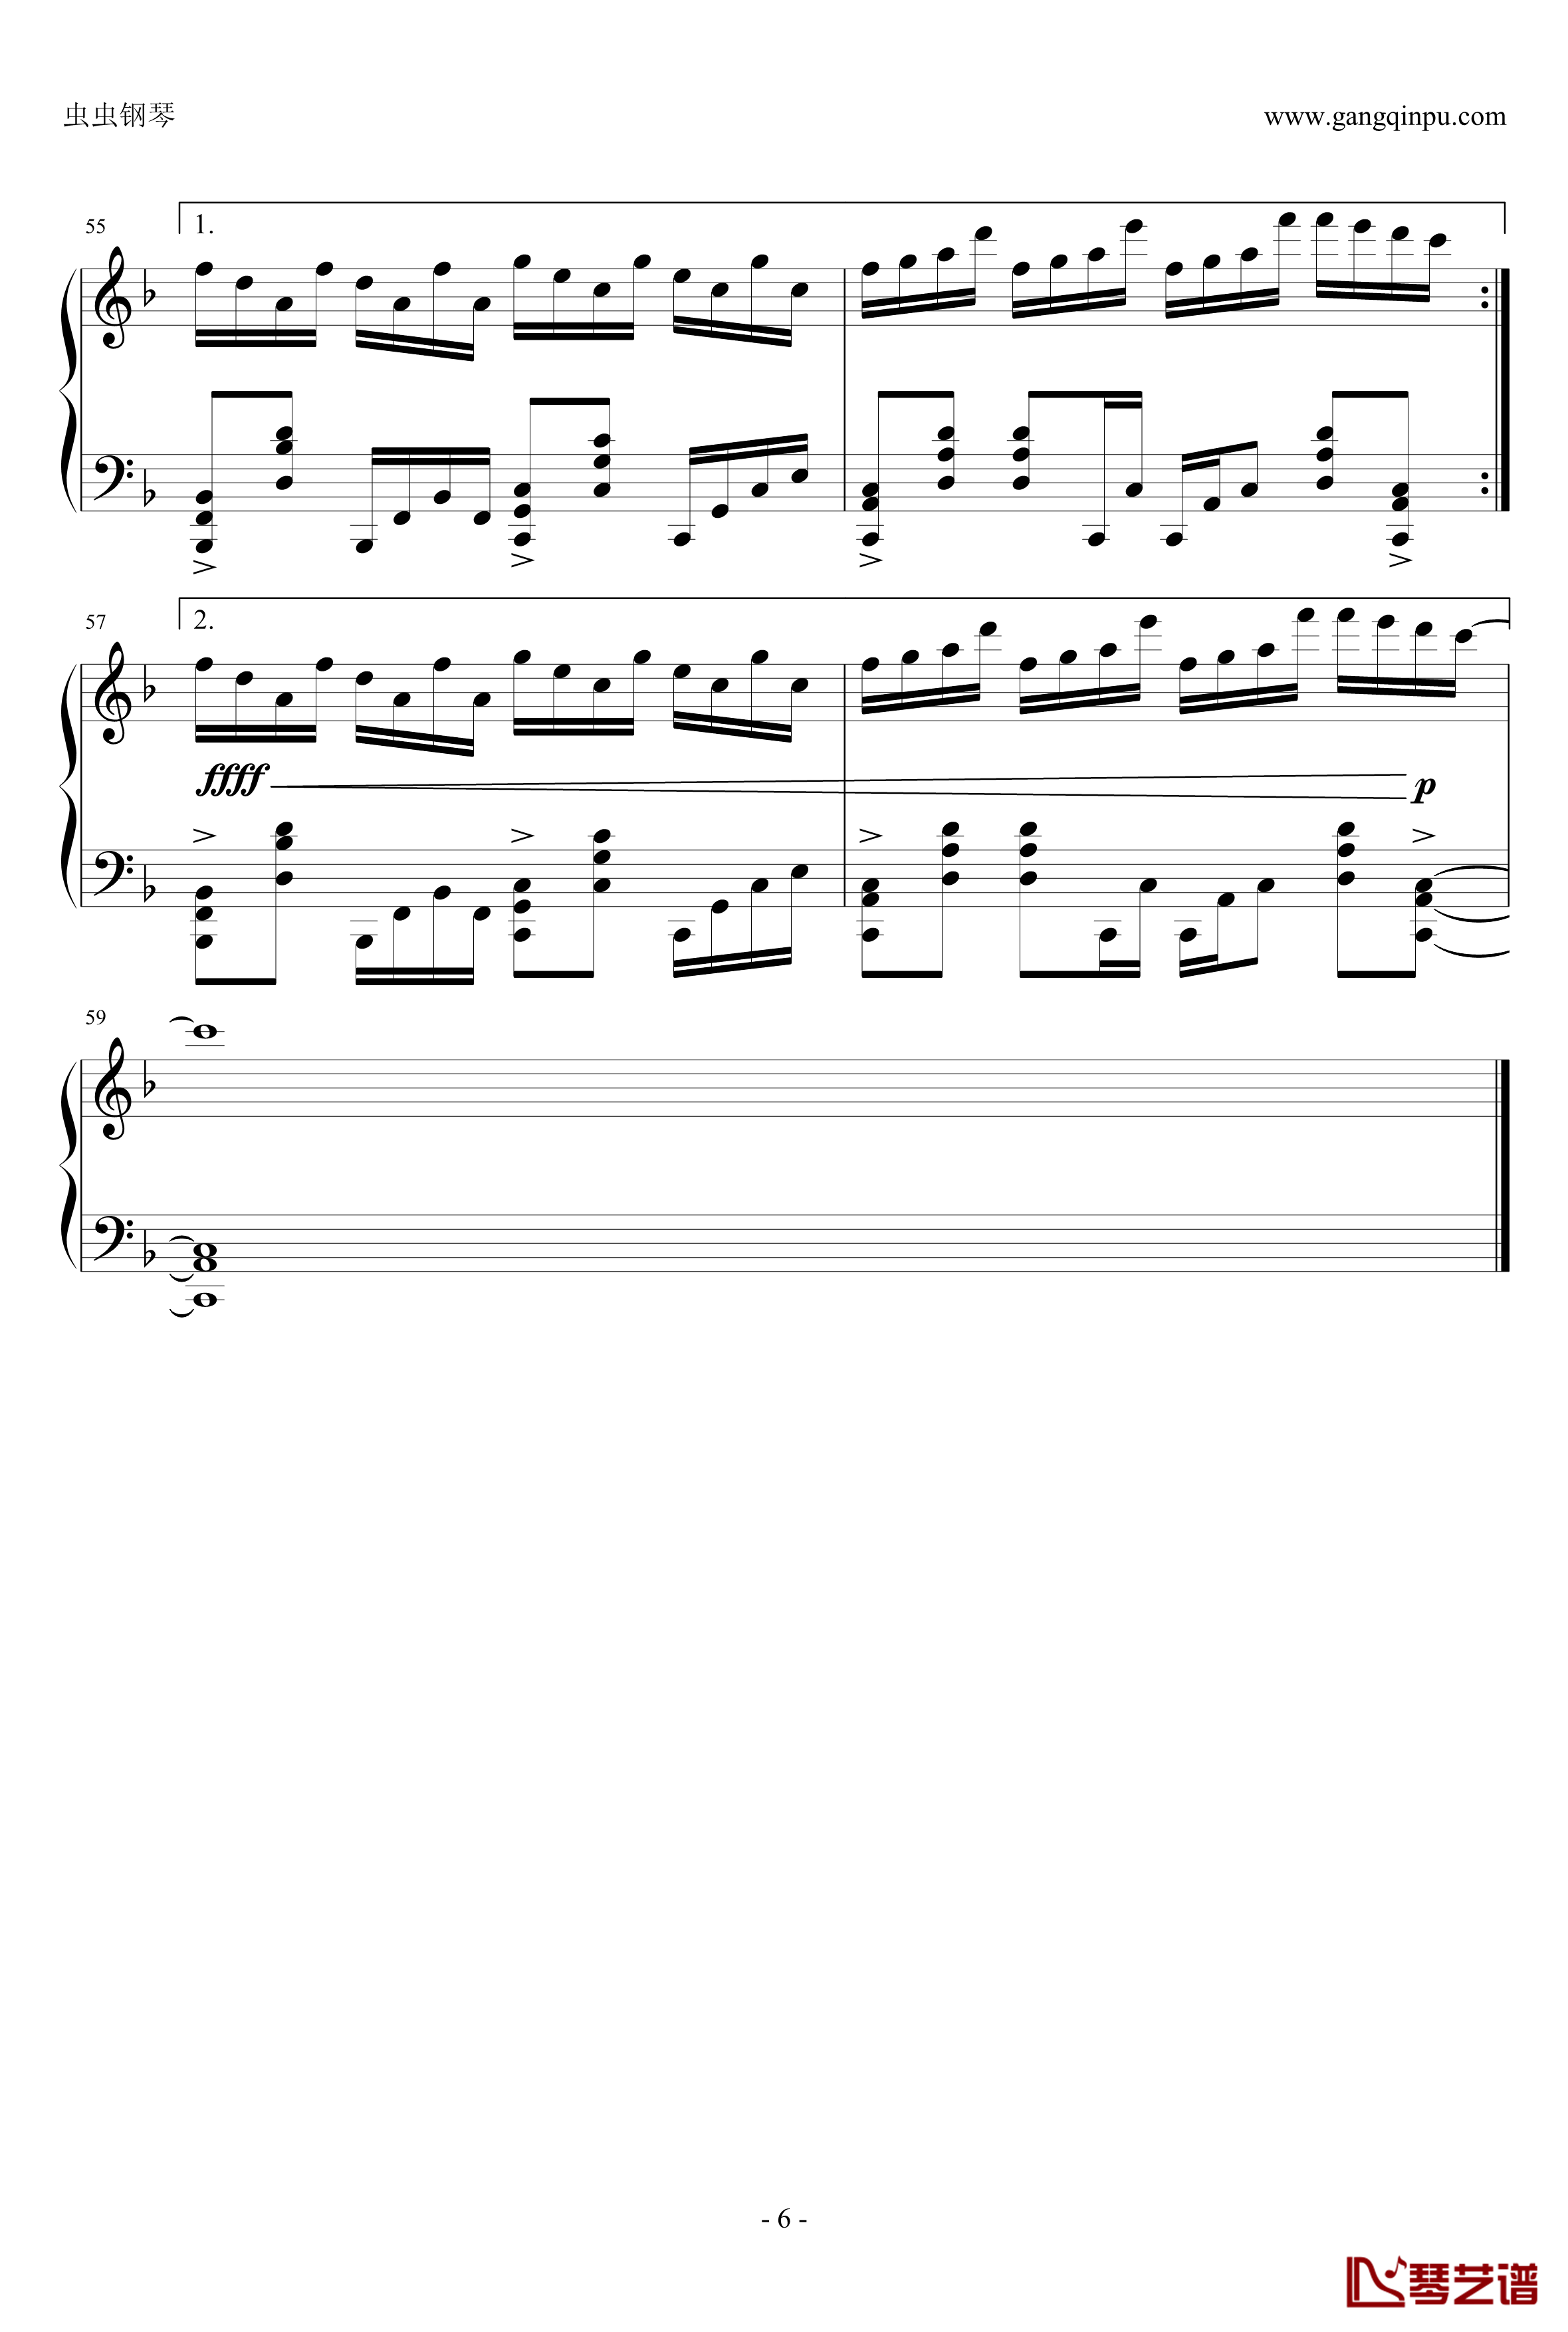 ボーダーオブライフ钢琴谱-zun-[2ch/东方Project]6